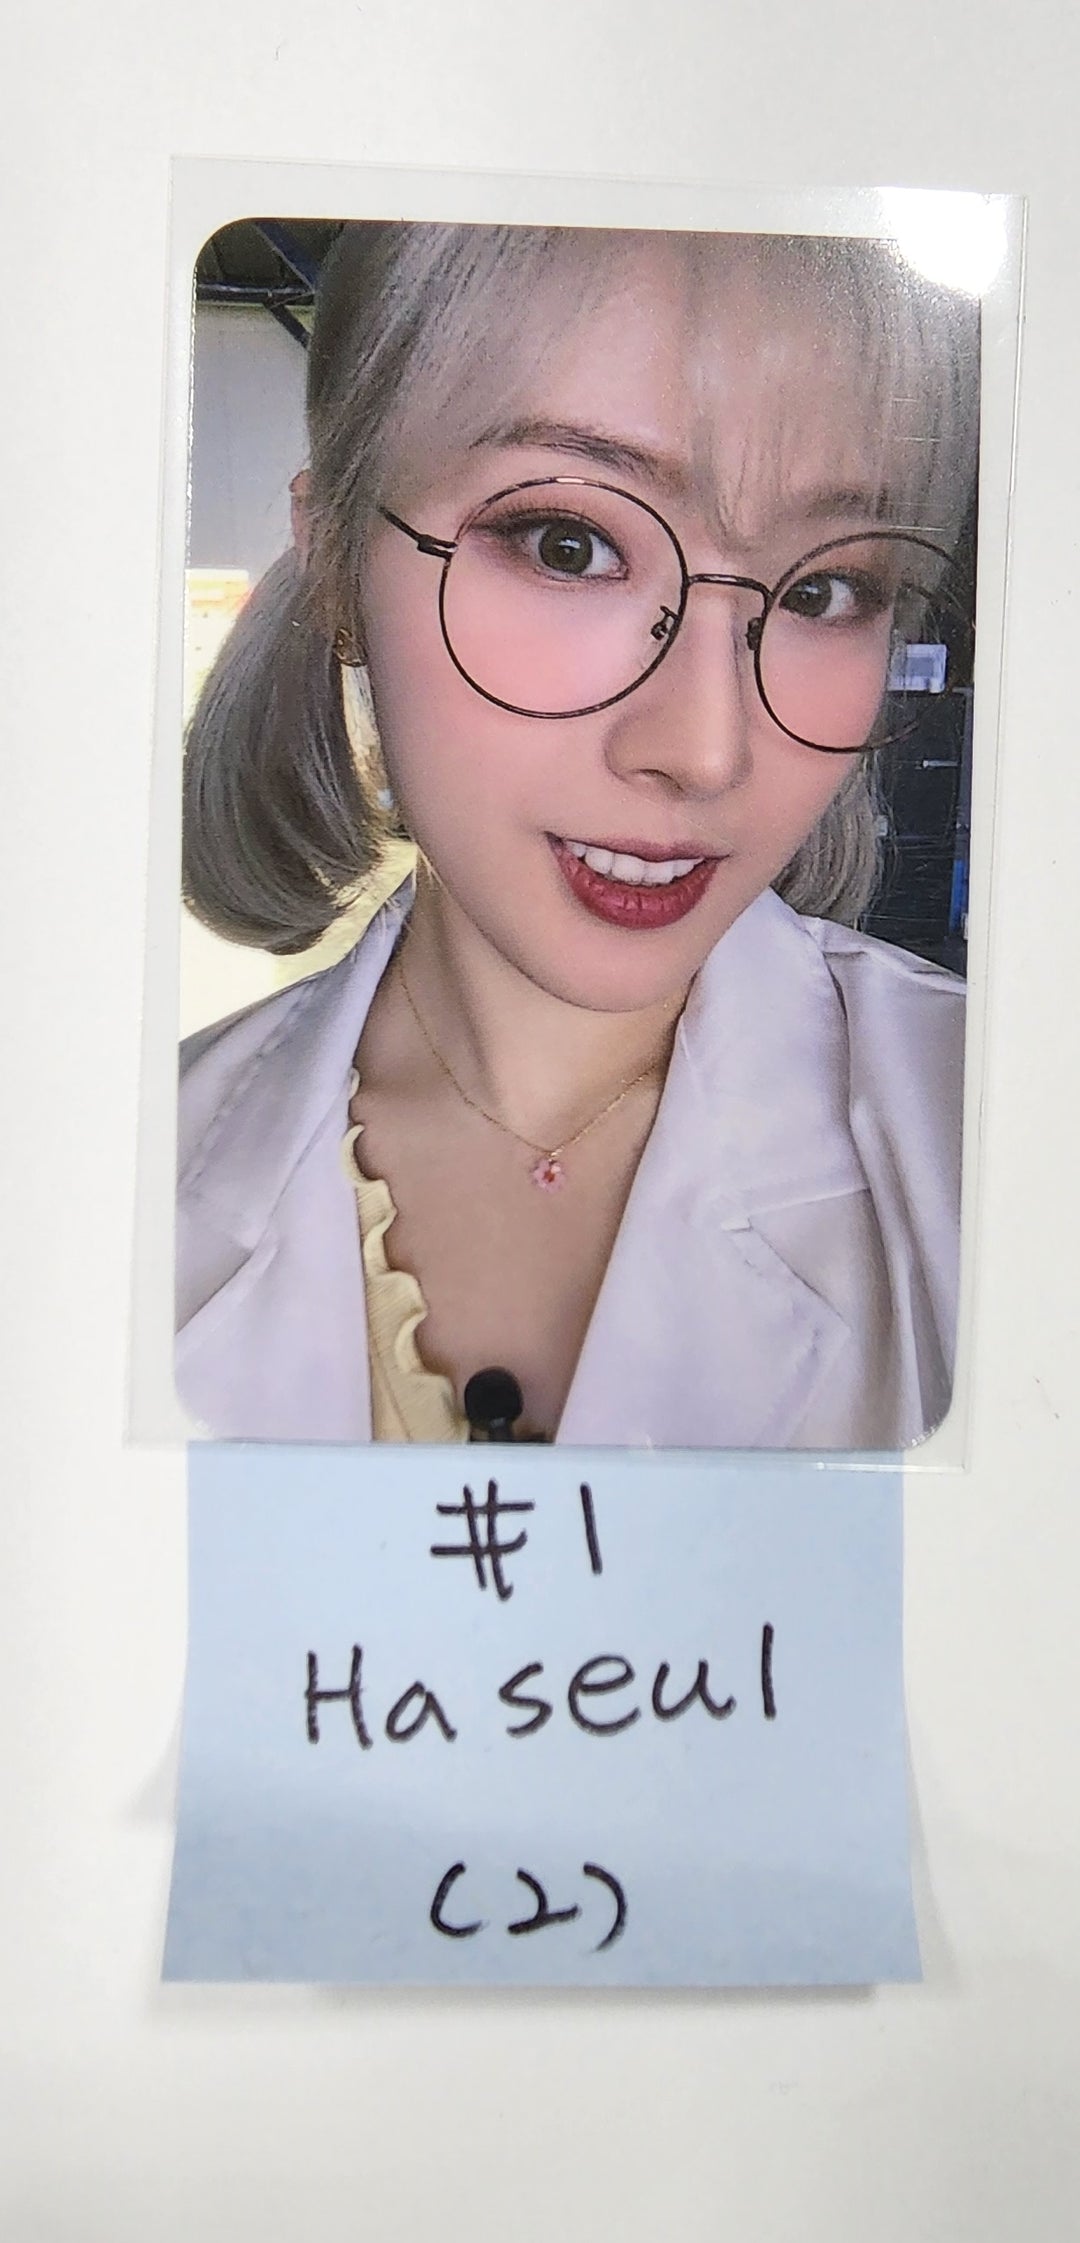 이달의 소녀 "Loona X IDOLSTEIN" - 페이퍼 퍼퓸 포토카드